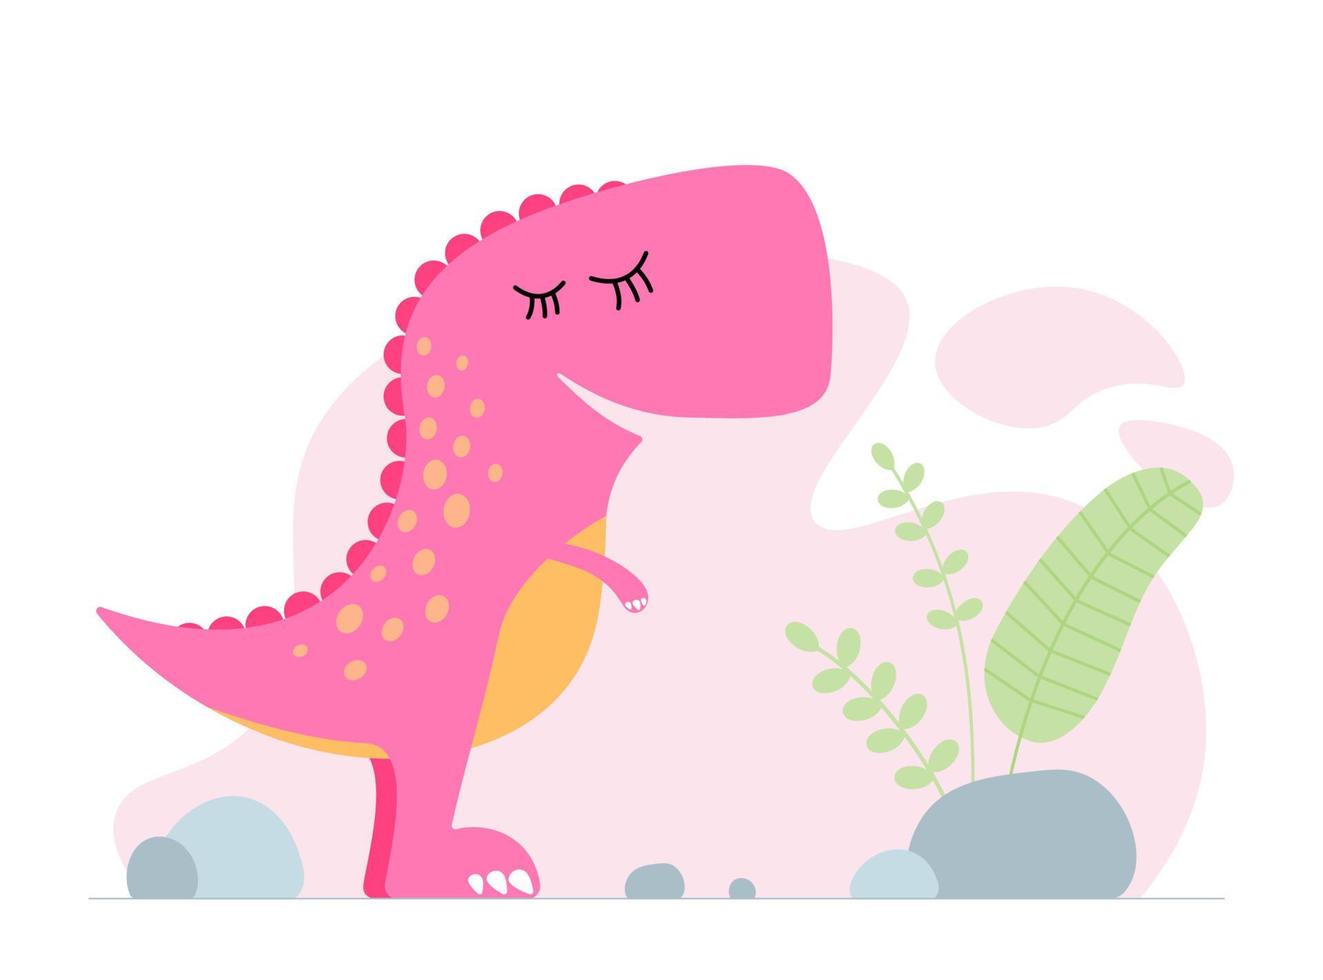 simpatico dinosauro rosa. tirannosauro di dinosauro bambino sorridente gentile. banner di stampa di progettazione grafica del bambino del fumetto. design originale t-rex da ragazza creativo. illustrazione vettoriale eps di disegno a mano